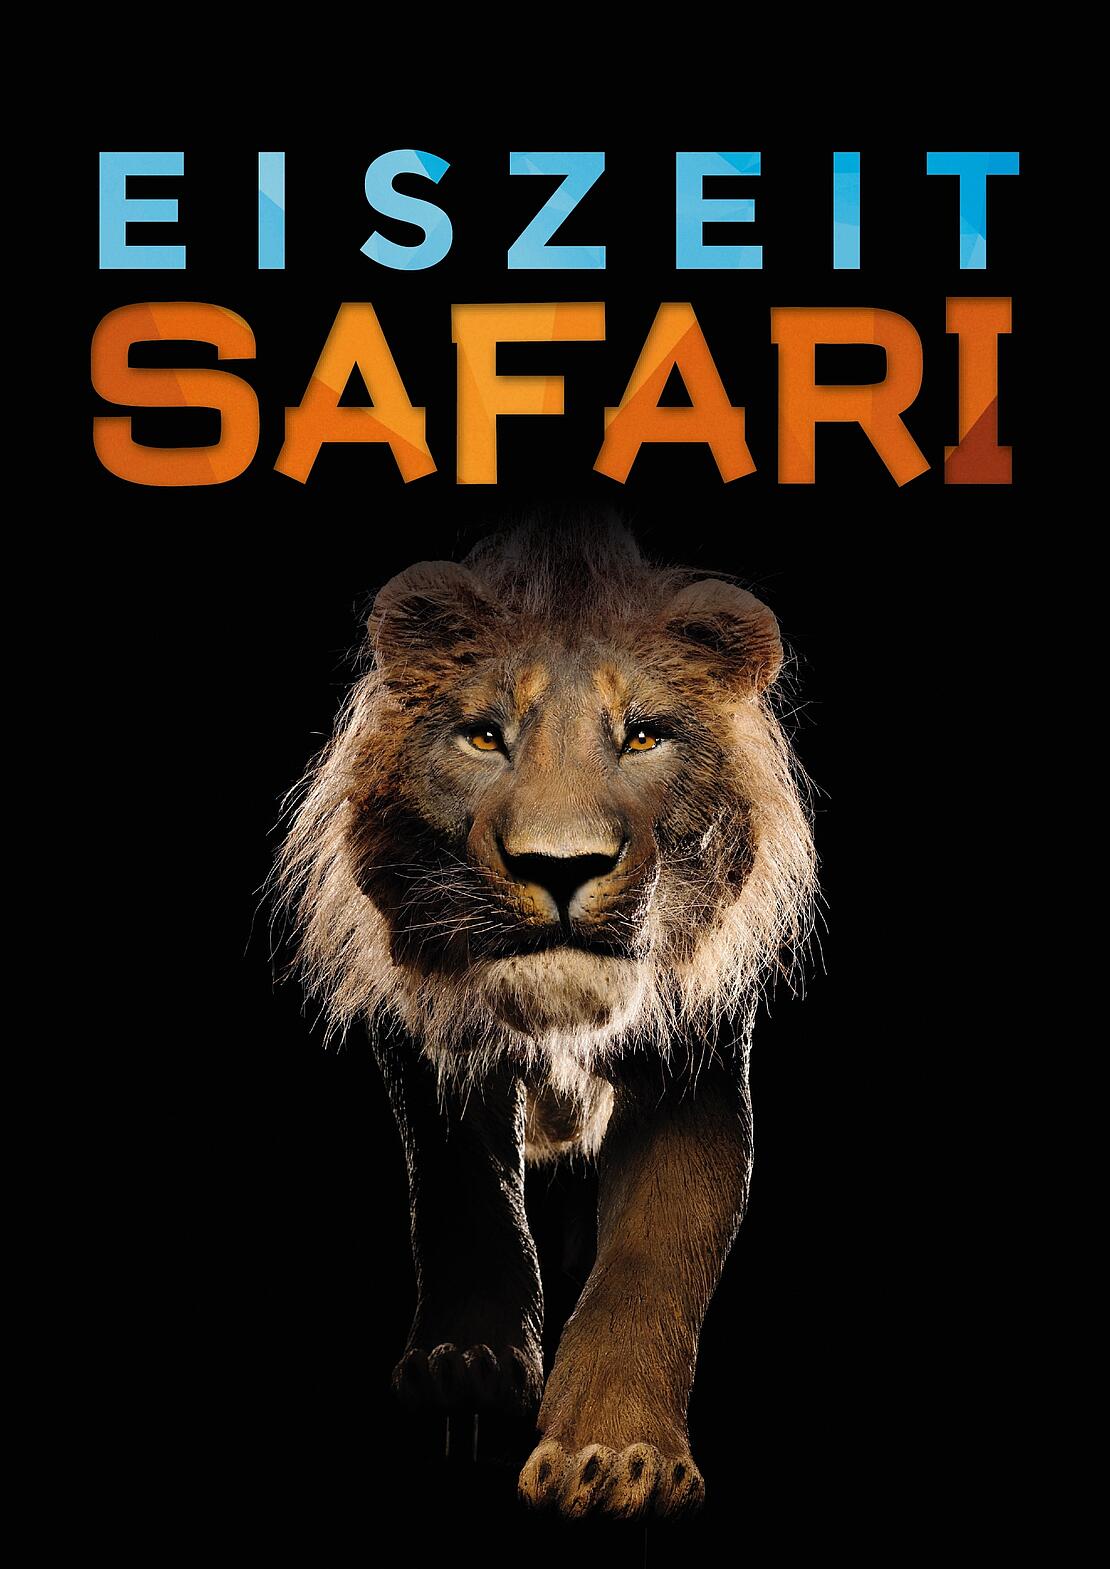 Plakat zur Ausstellung "Eiszeit-Safari" mit Höhlenlöwen